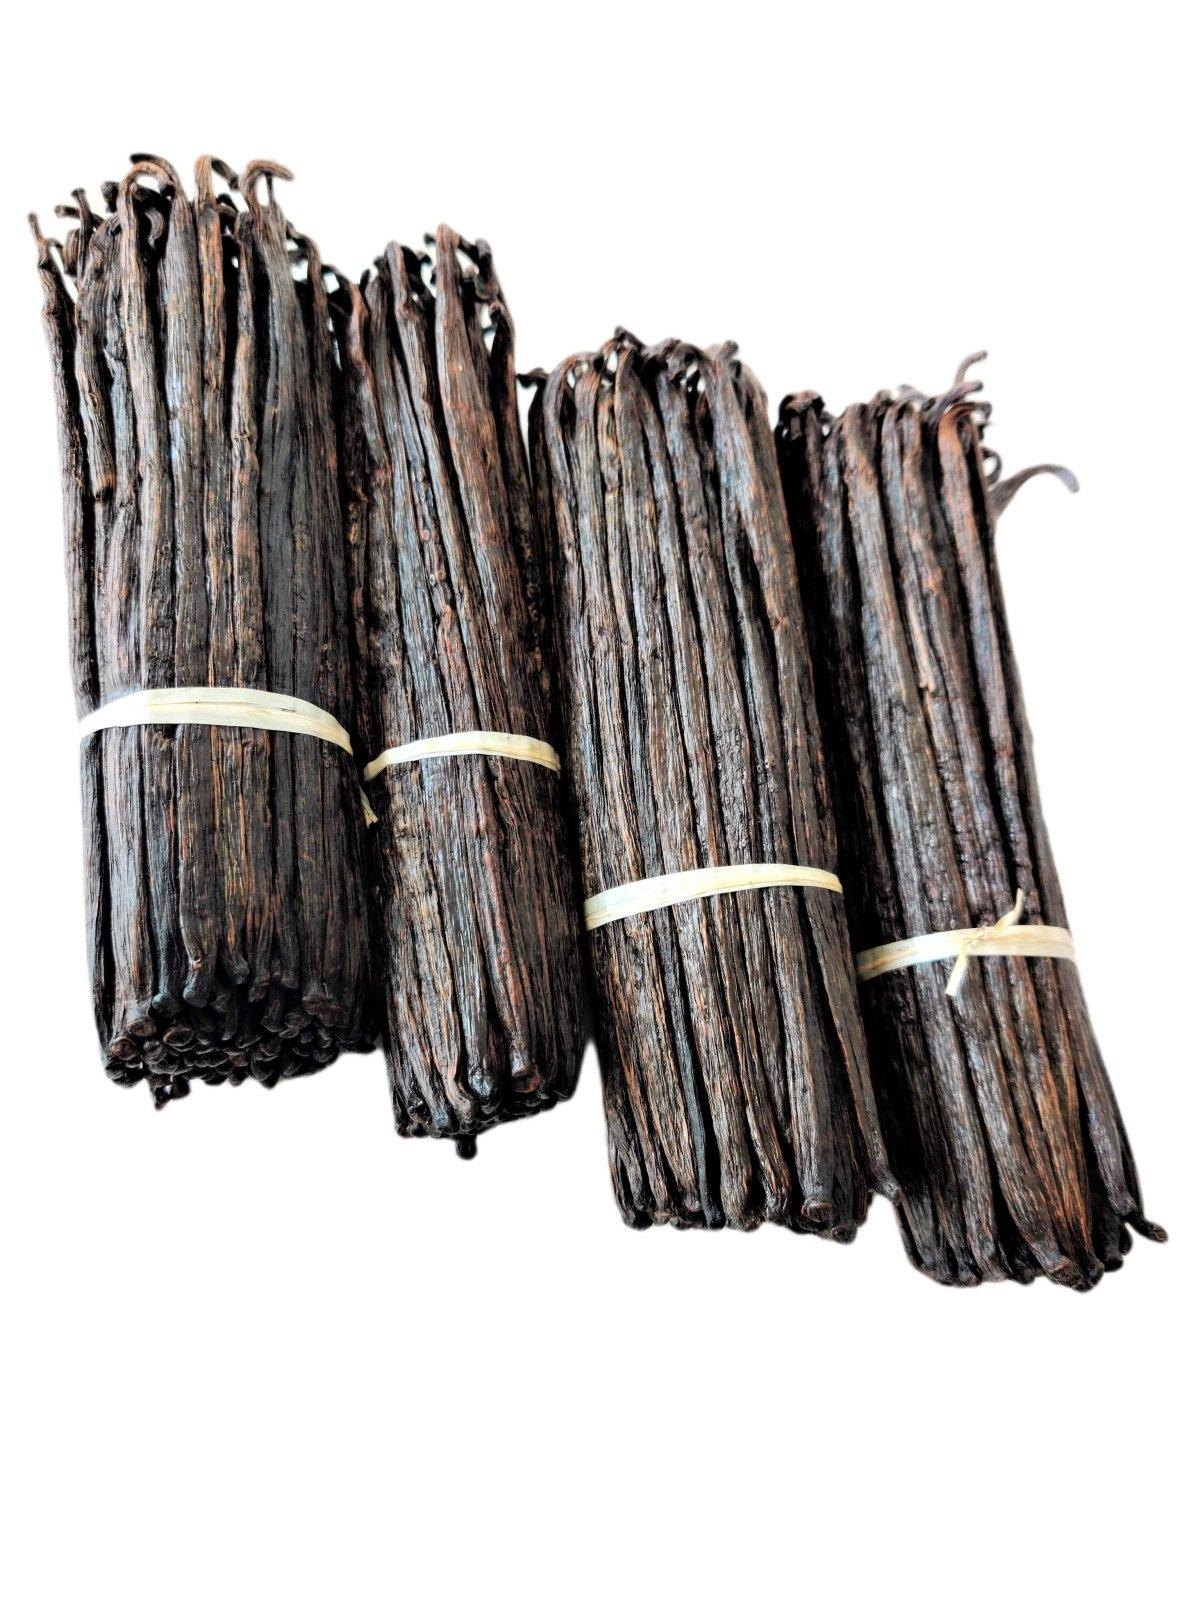 Extrait de Bourbon de Madagascar Gousses de Vanille Grade-B<br> Pour la fabrication d'extraits<br> 1 once, 3 onces, 5 onces, 10 onces, 20 onces, 30 onces 